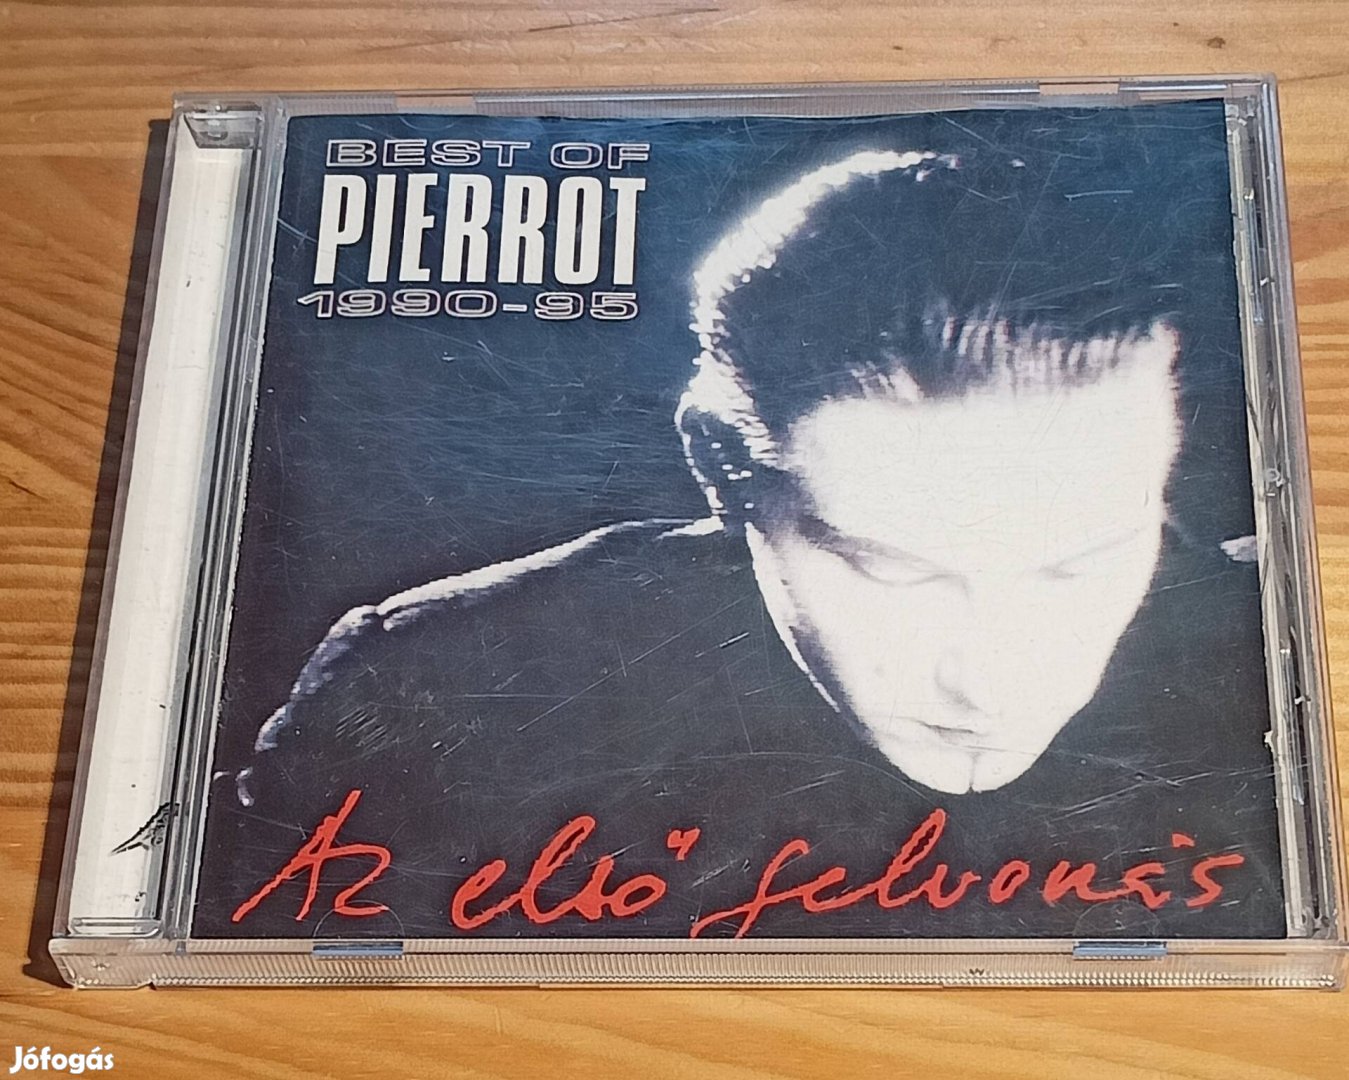 Pierrot - Best of 1990-95 CD